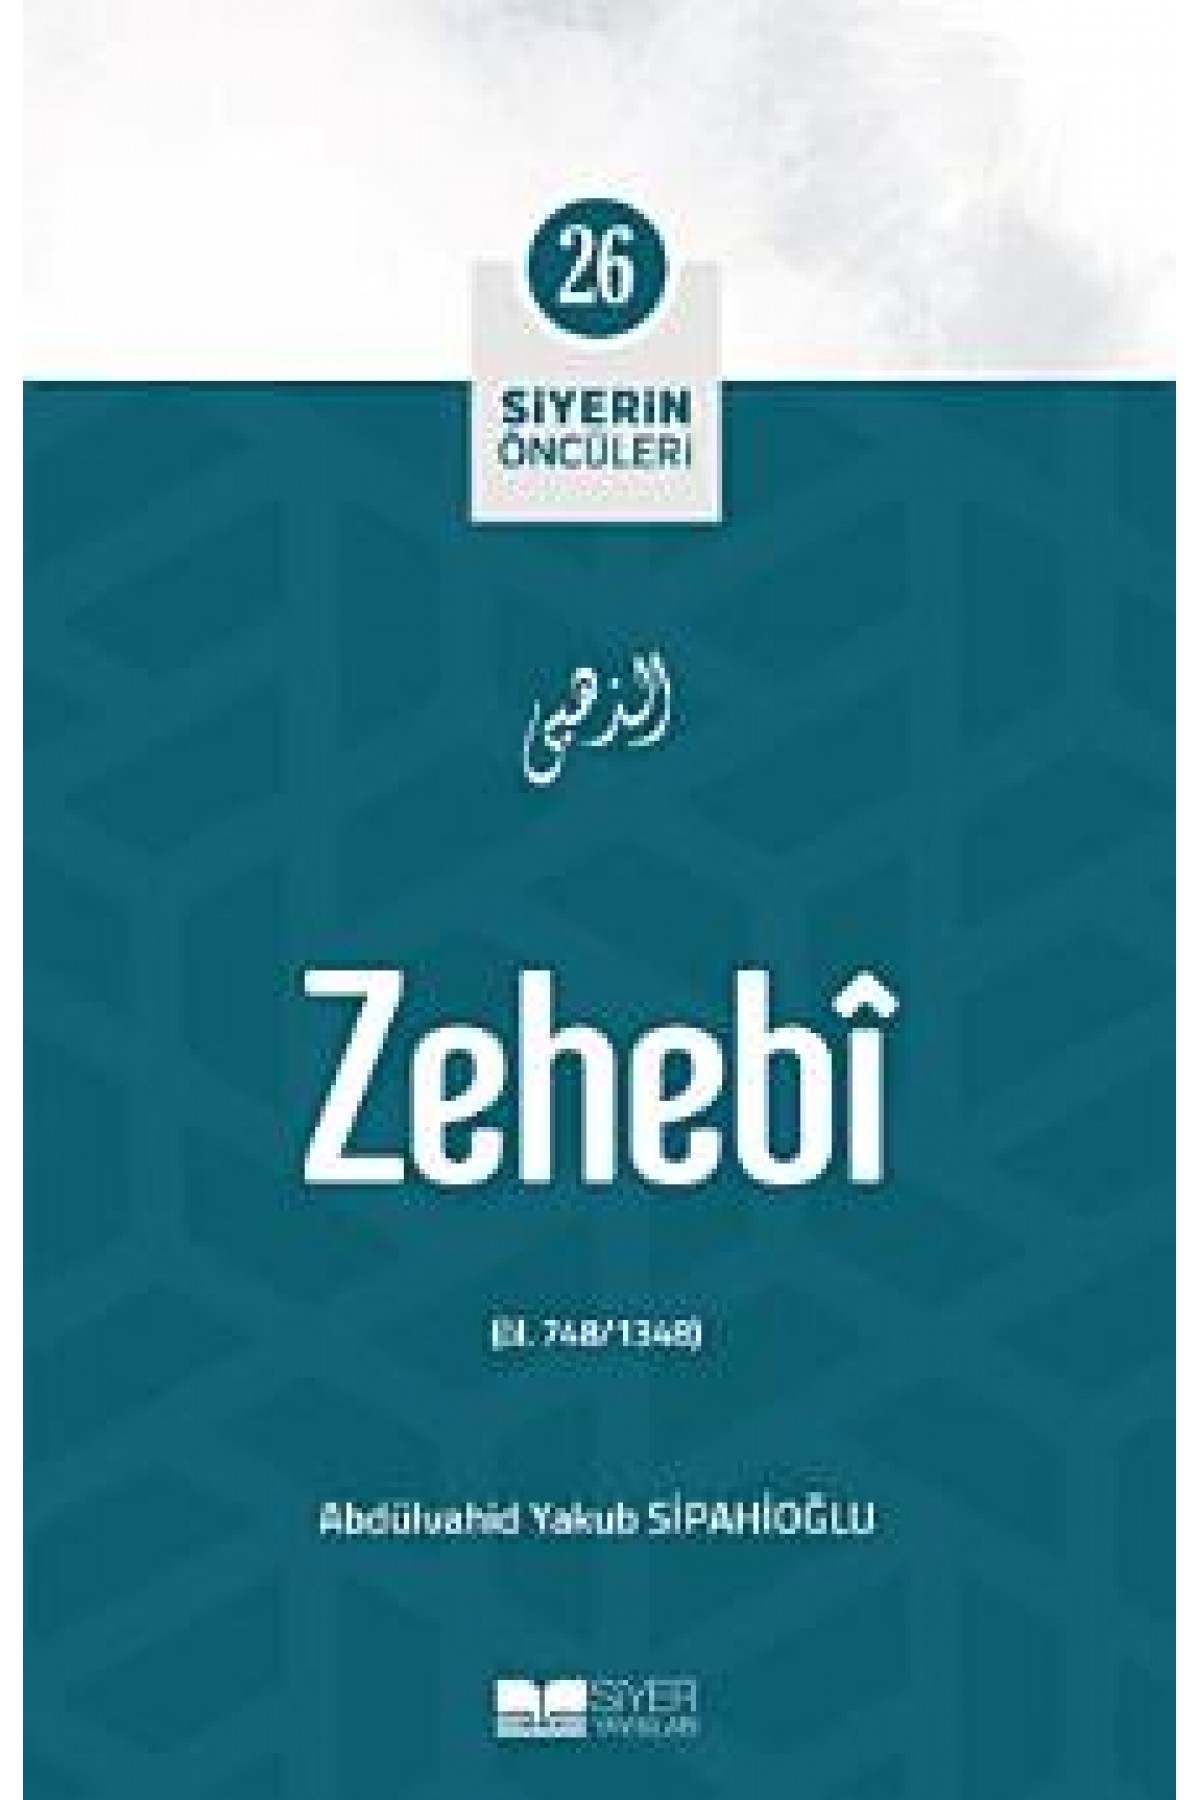 Zehebi; Siyerin Öncüleri 26